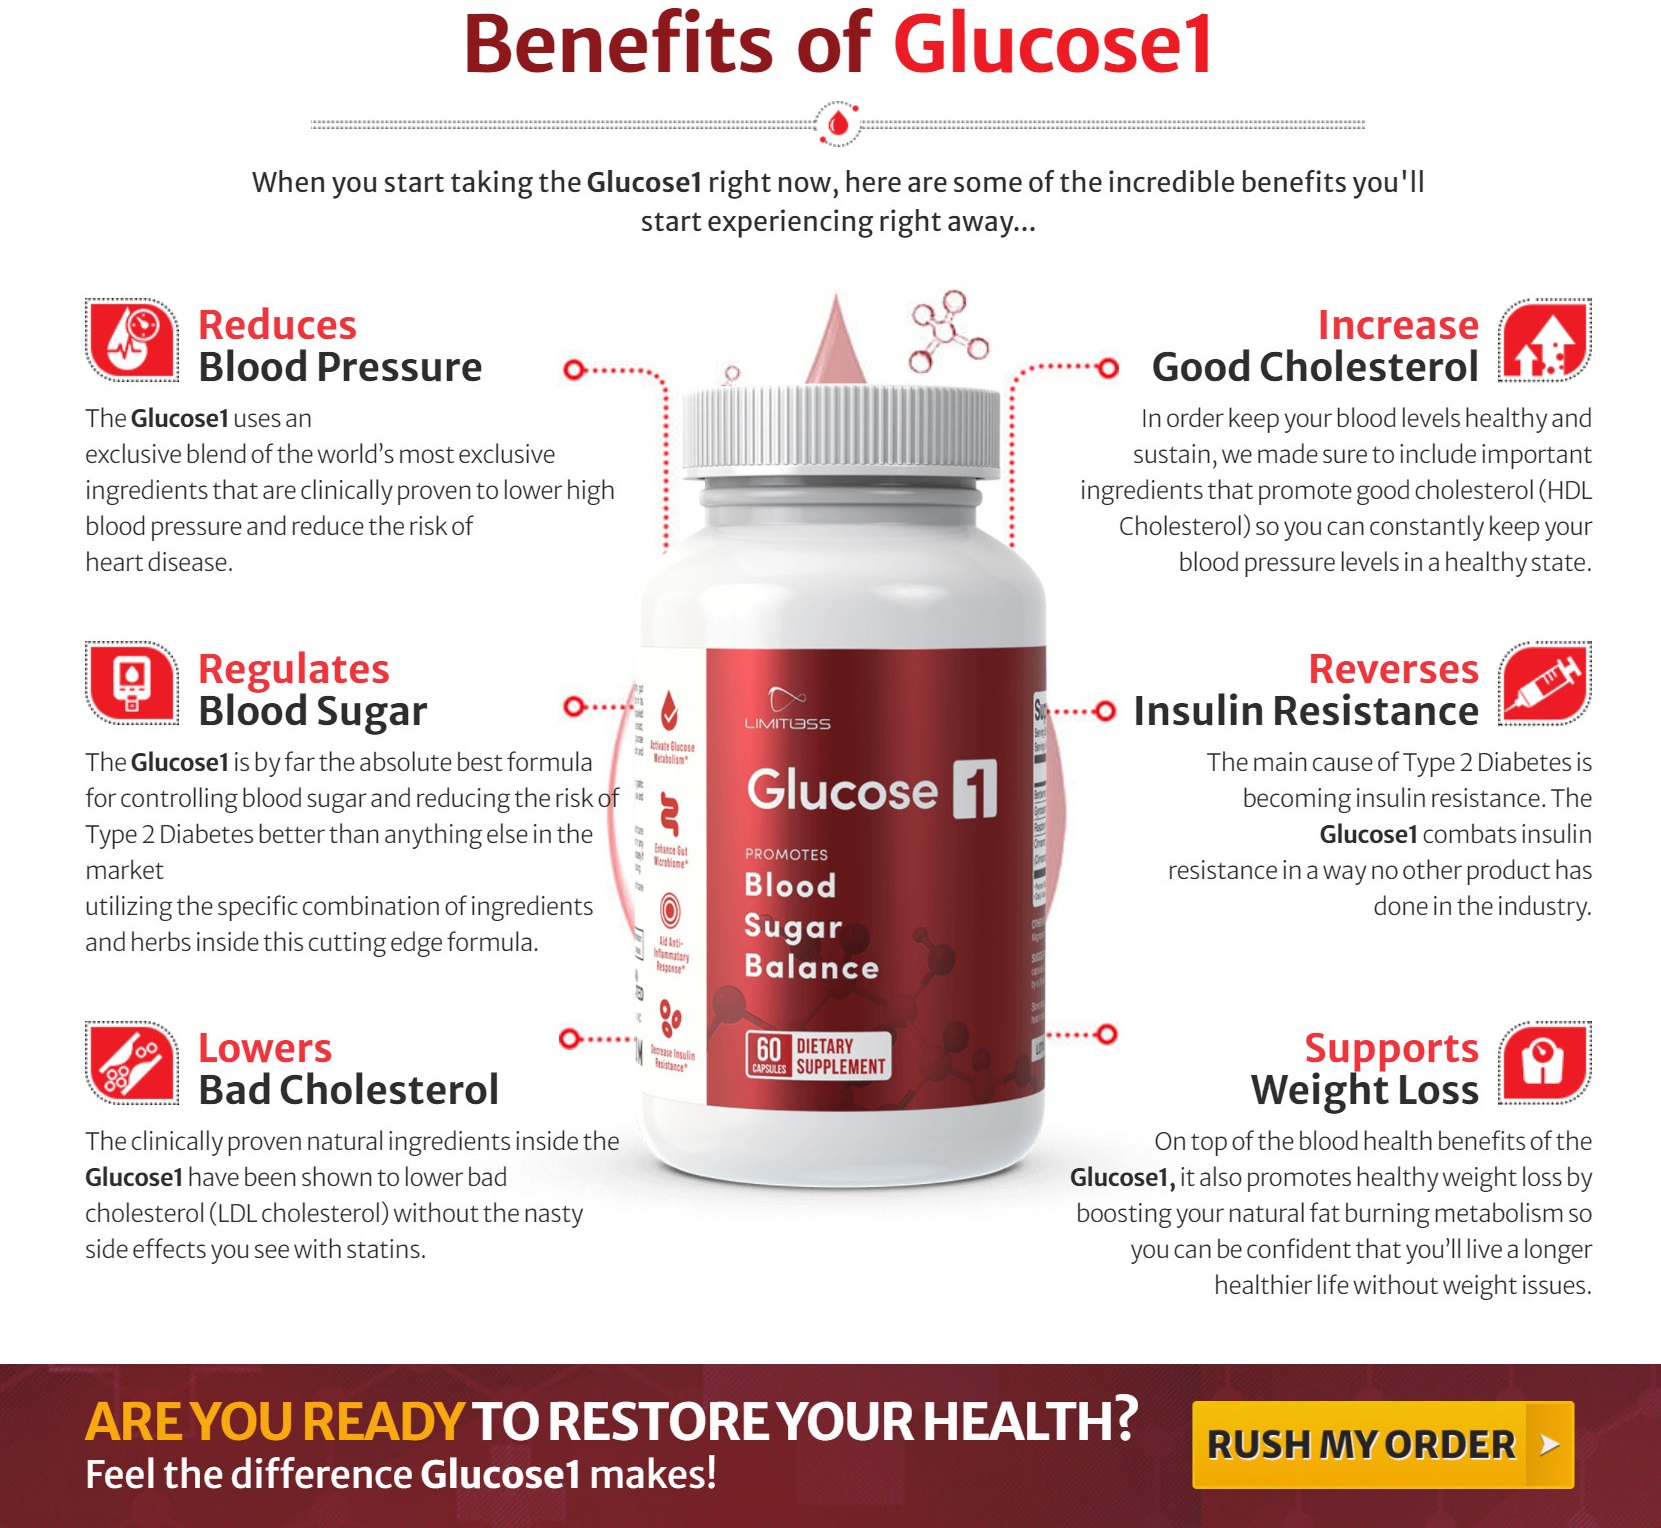 Glucose1 Blood Sugar Balance Formula Benefits